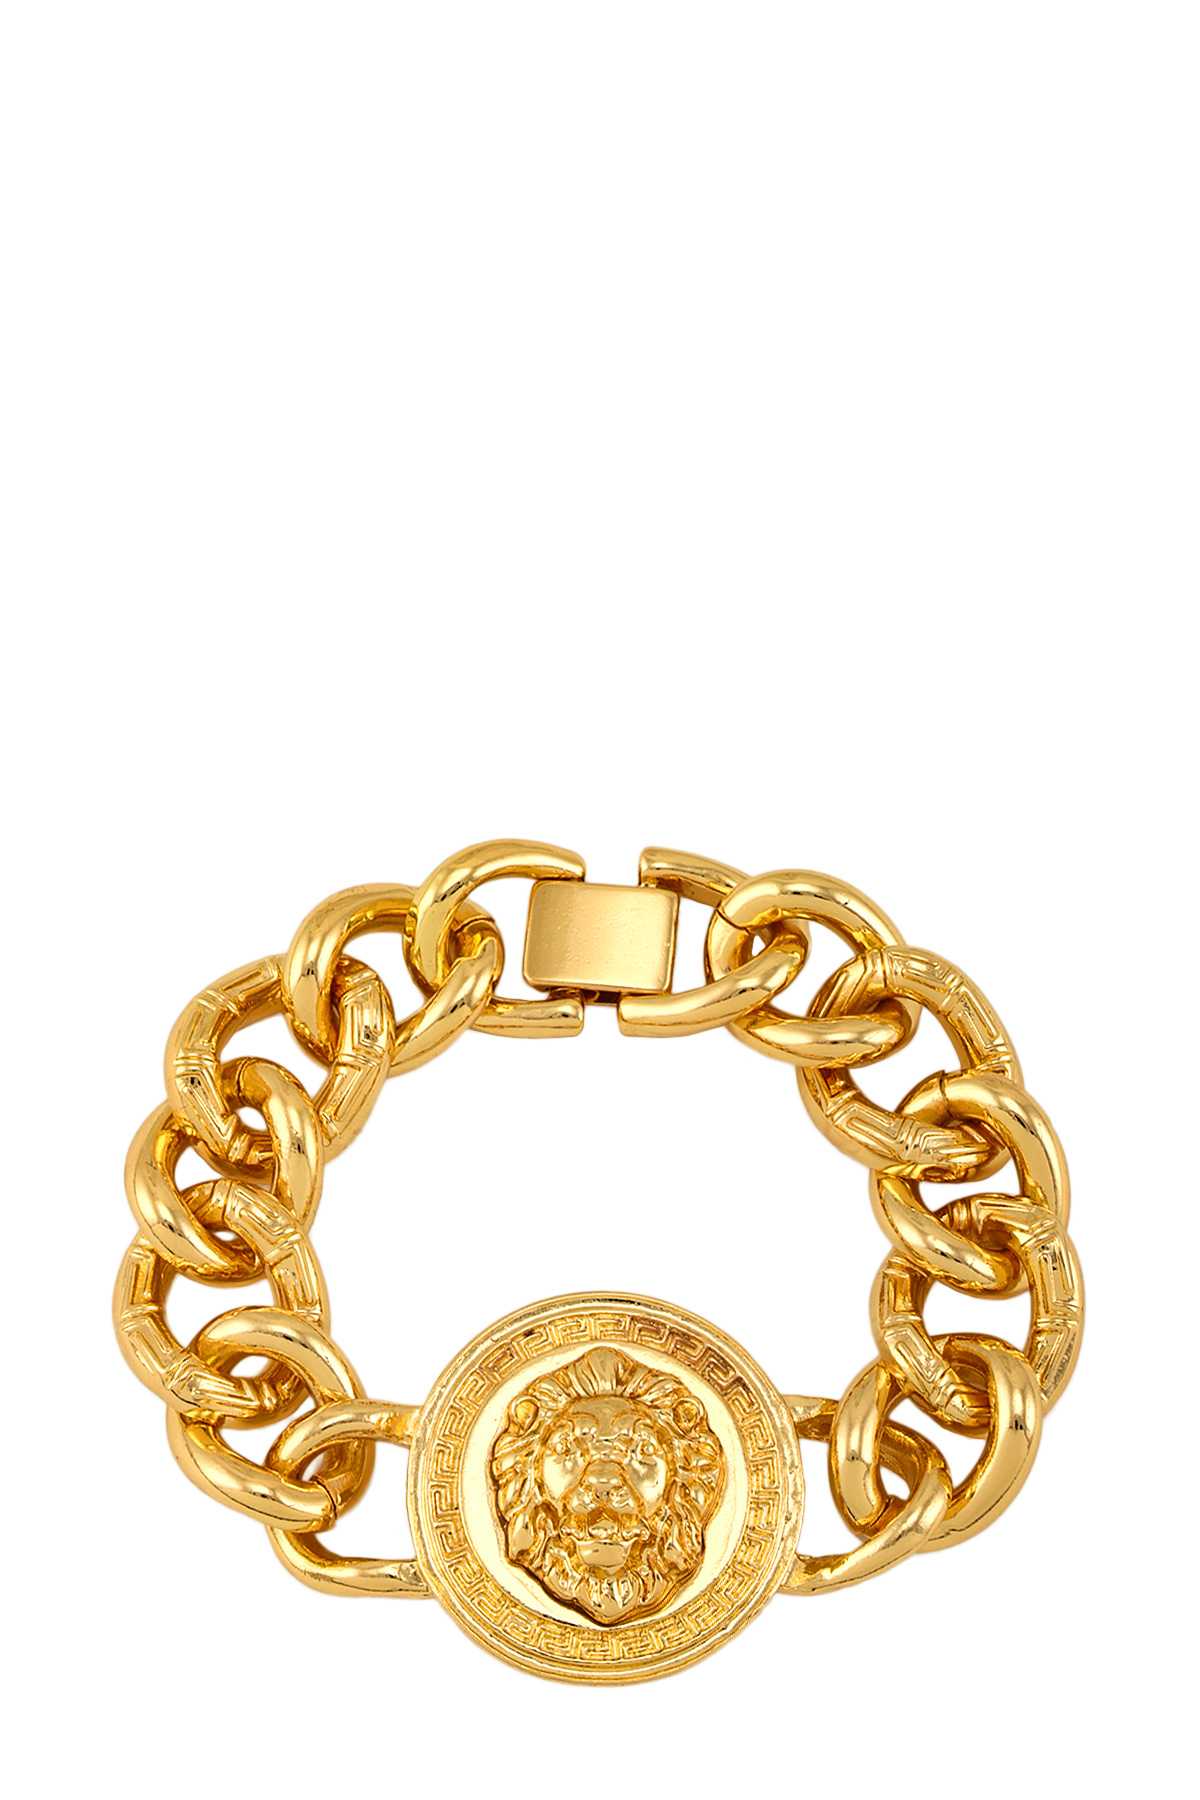 Metal Circle Lion Charm Chain bracelet